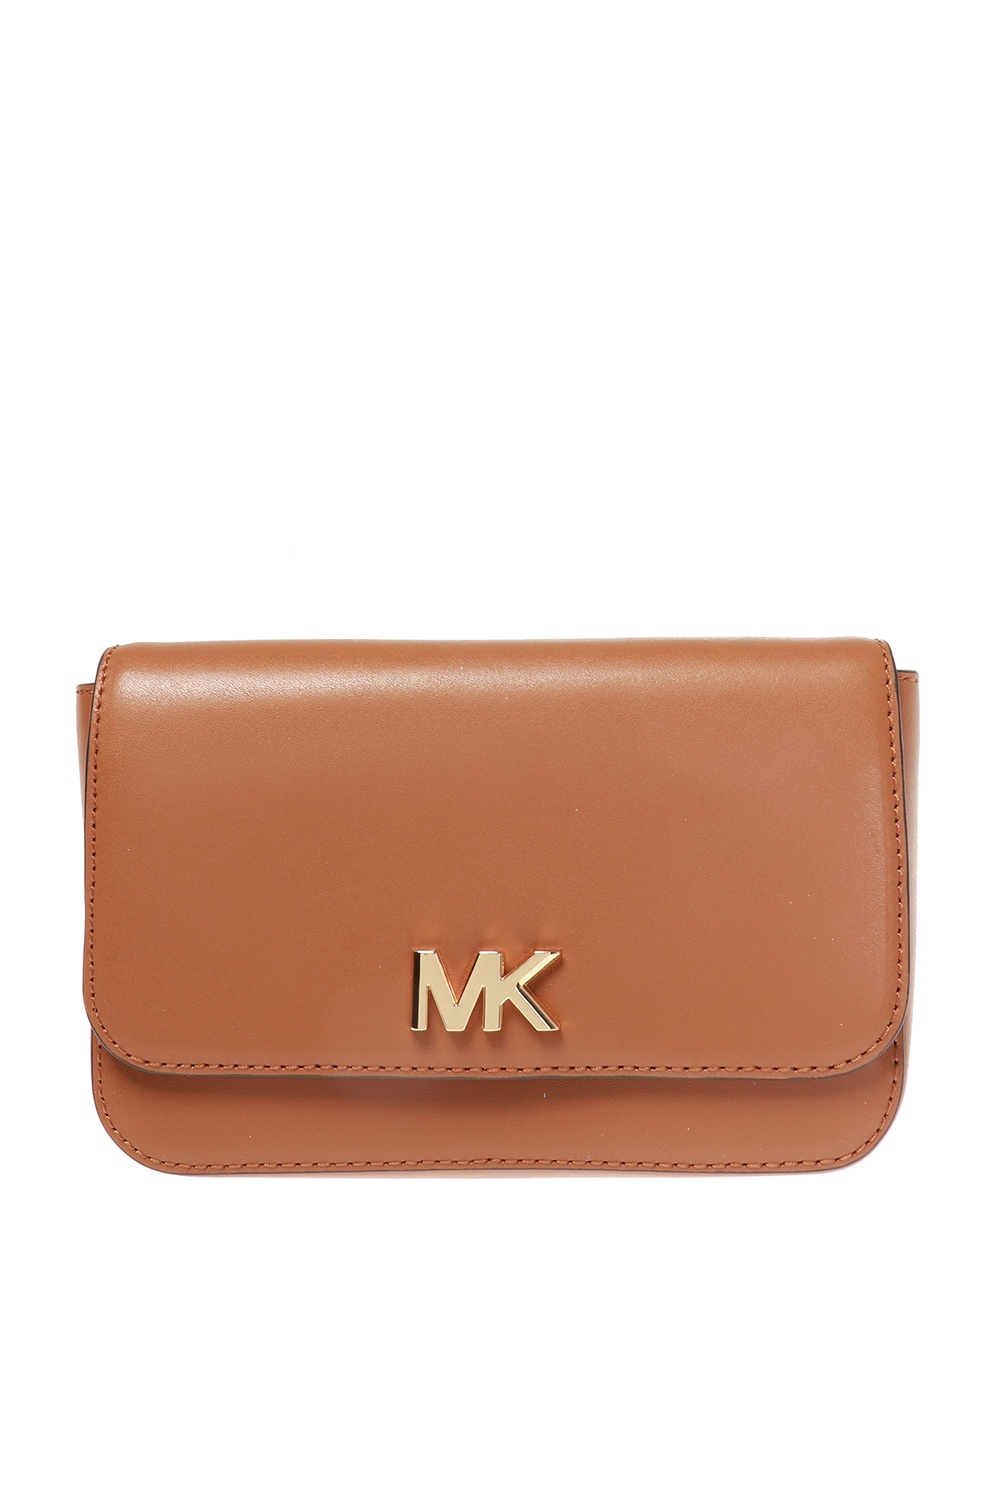 mk wallet canada